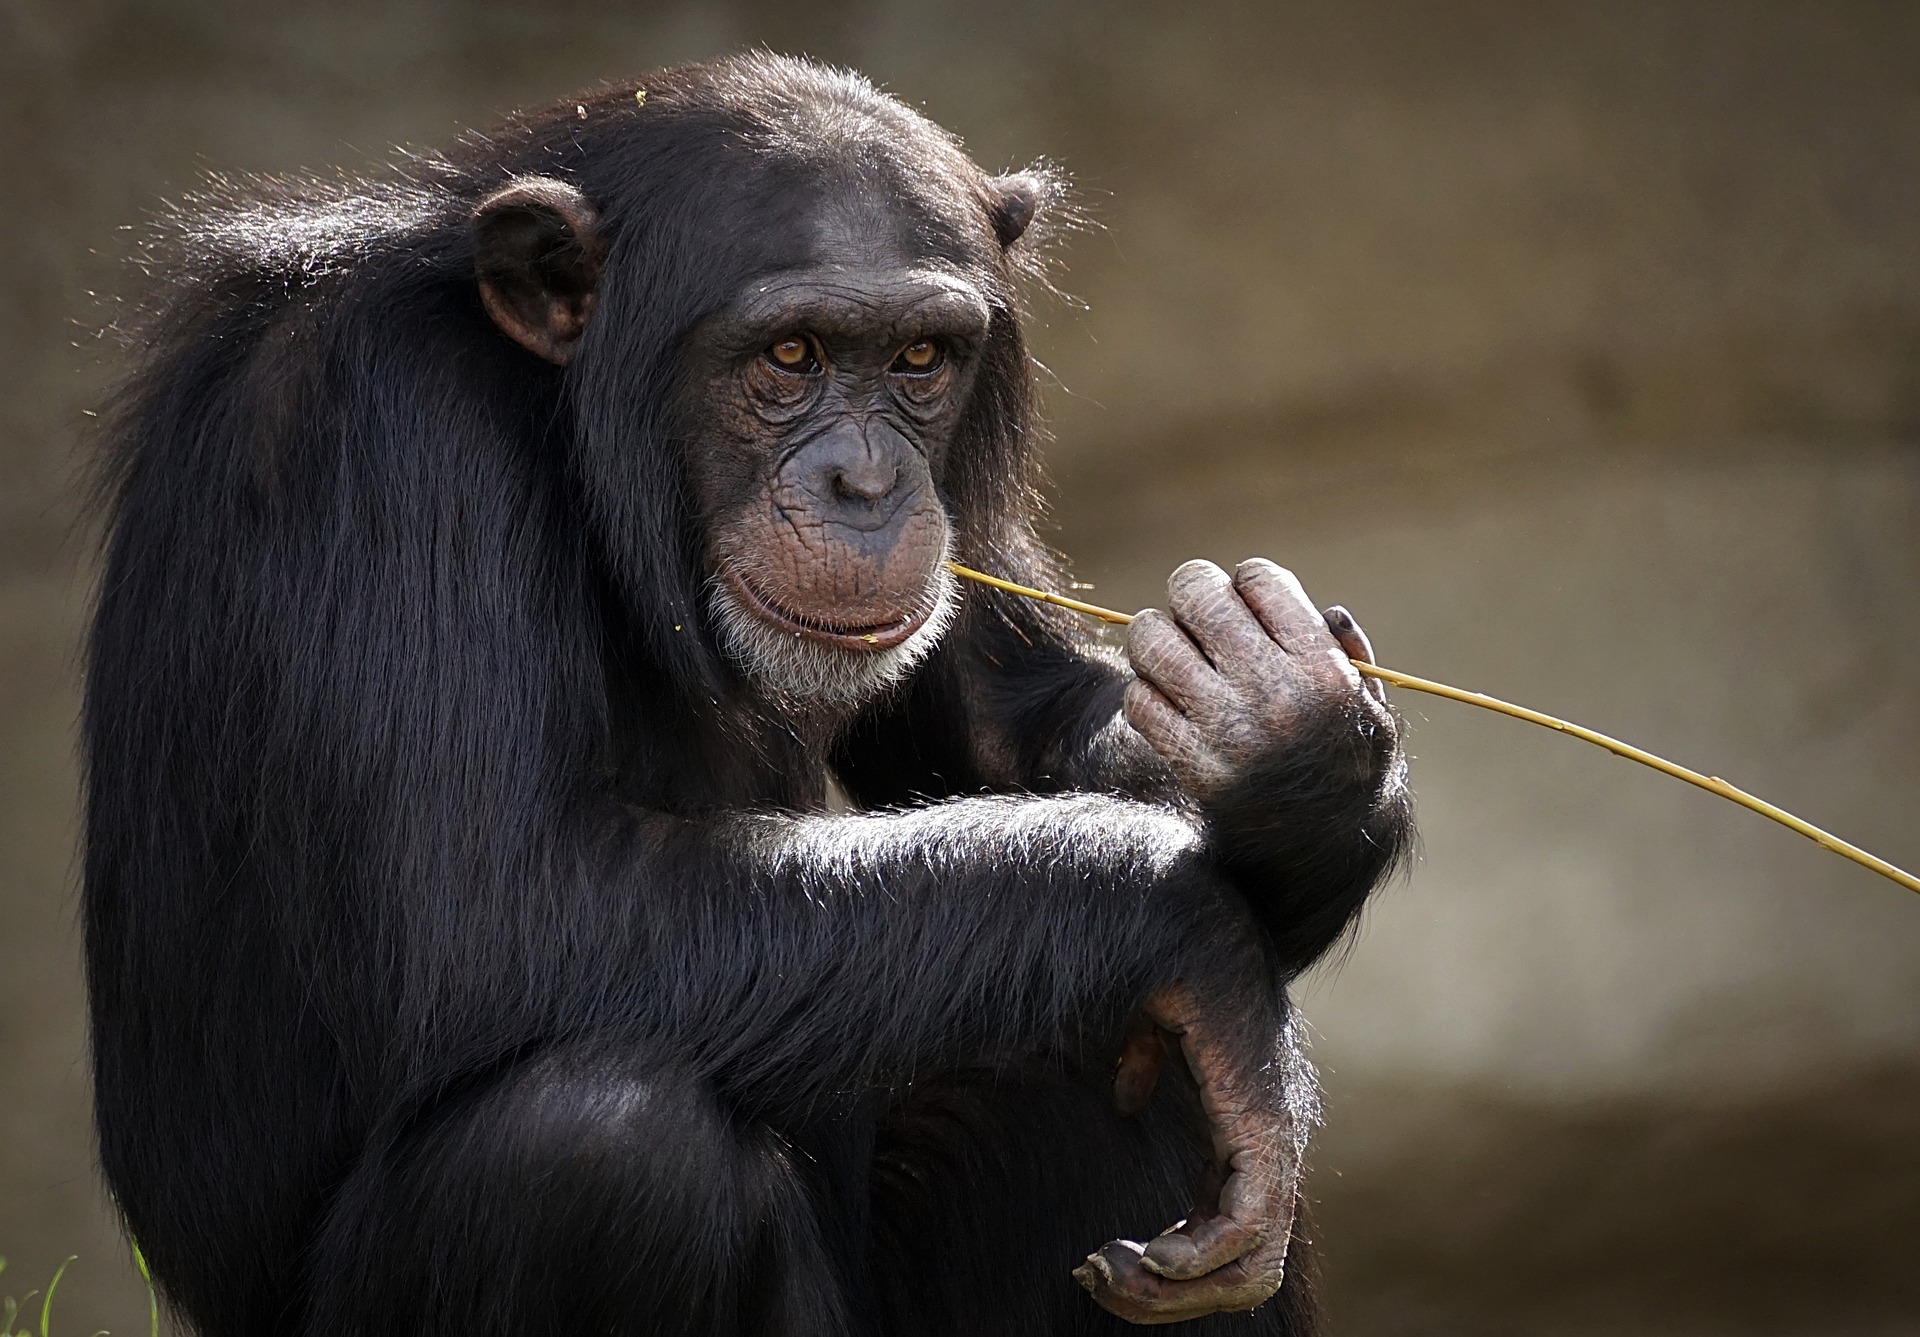 isvicre-maymunlara-temel-hak-verilmesi-icin-referanduma-gidiyor-3321-dhaphoto1.jpg